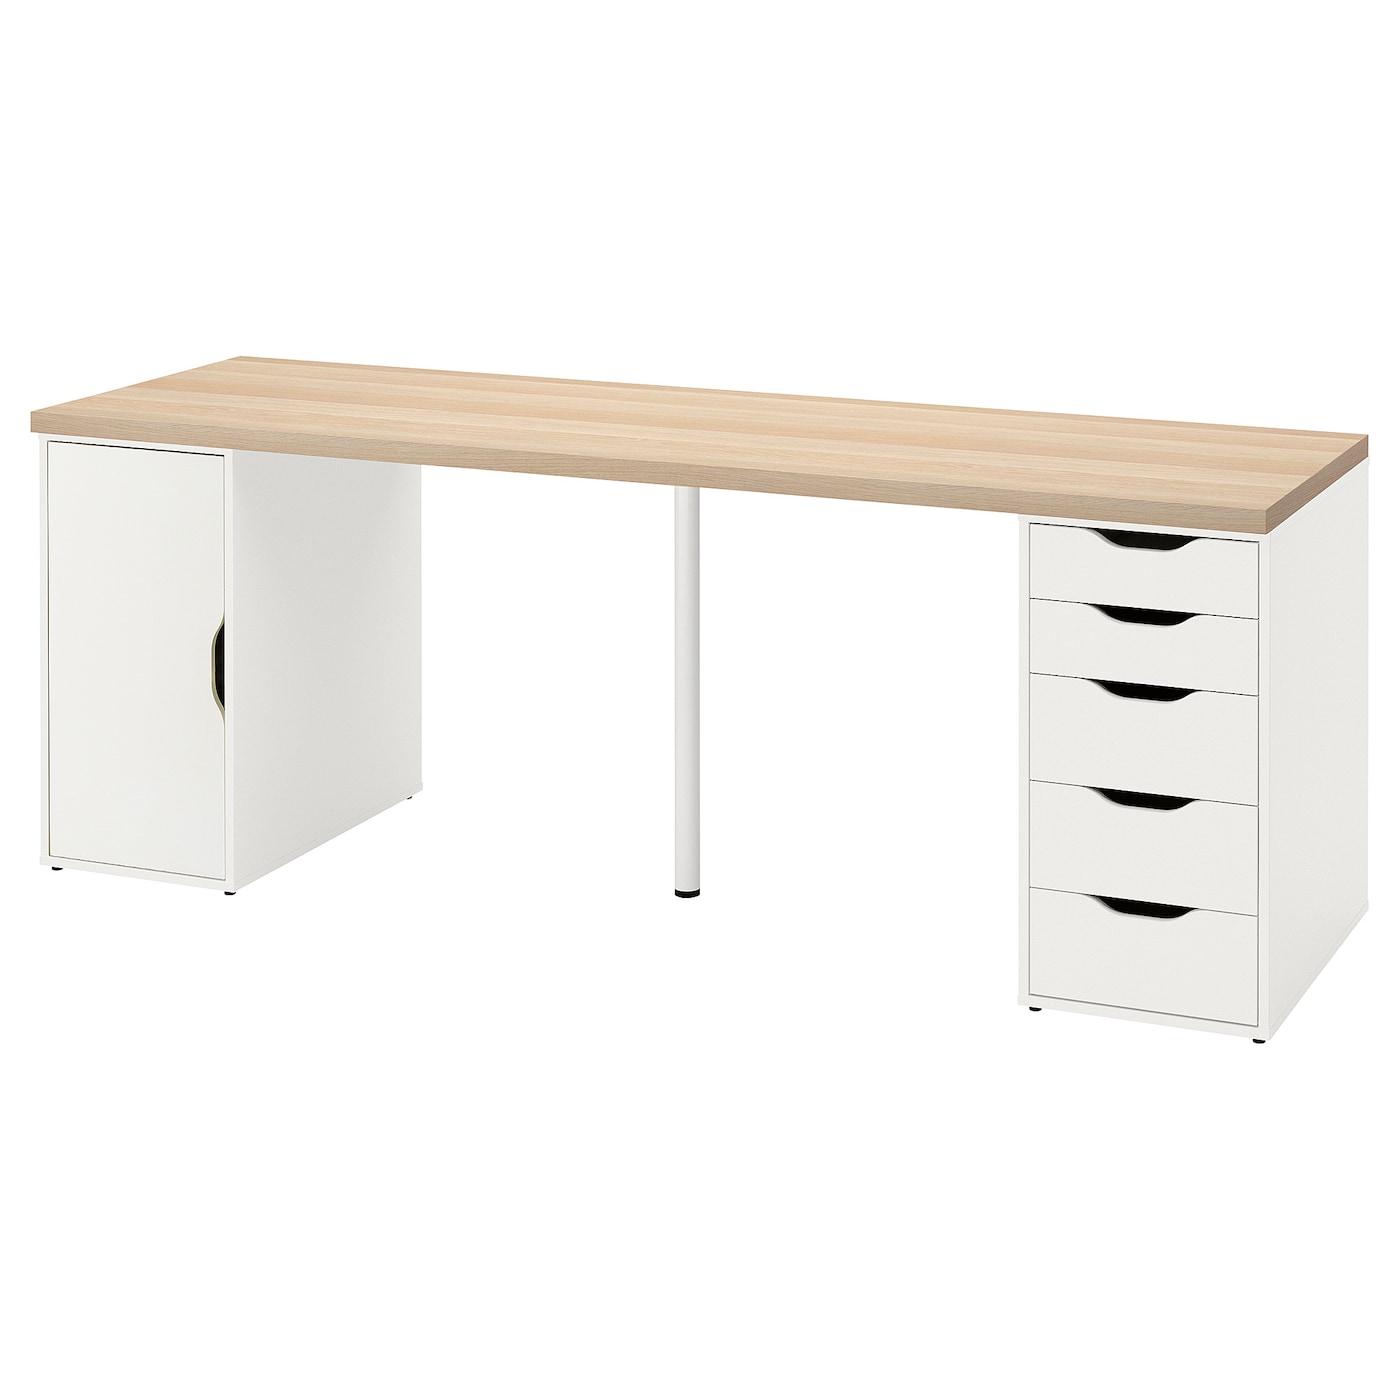 Письменный стол с ящиками - IKEA LAGKAPTEN/ALEX/ЛАГКАПТЕН/АЛЕКС ИКЕА, 200х60 см, под беленый дуб/белый